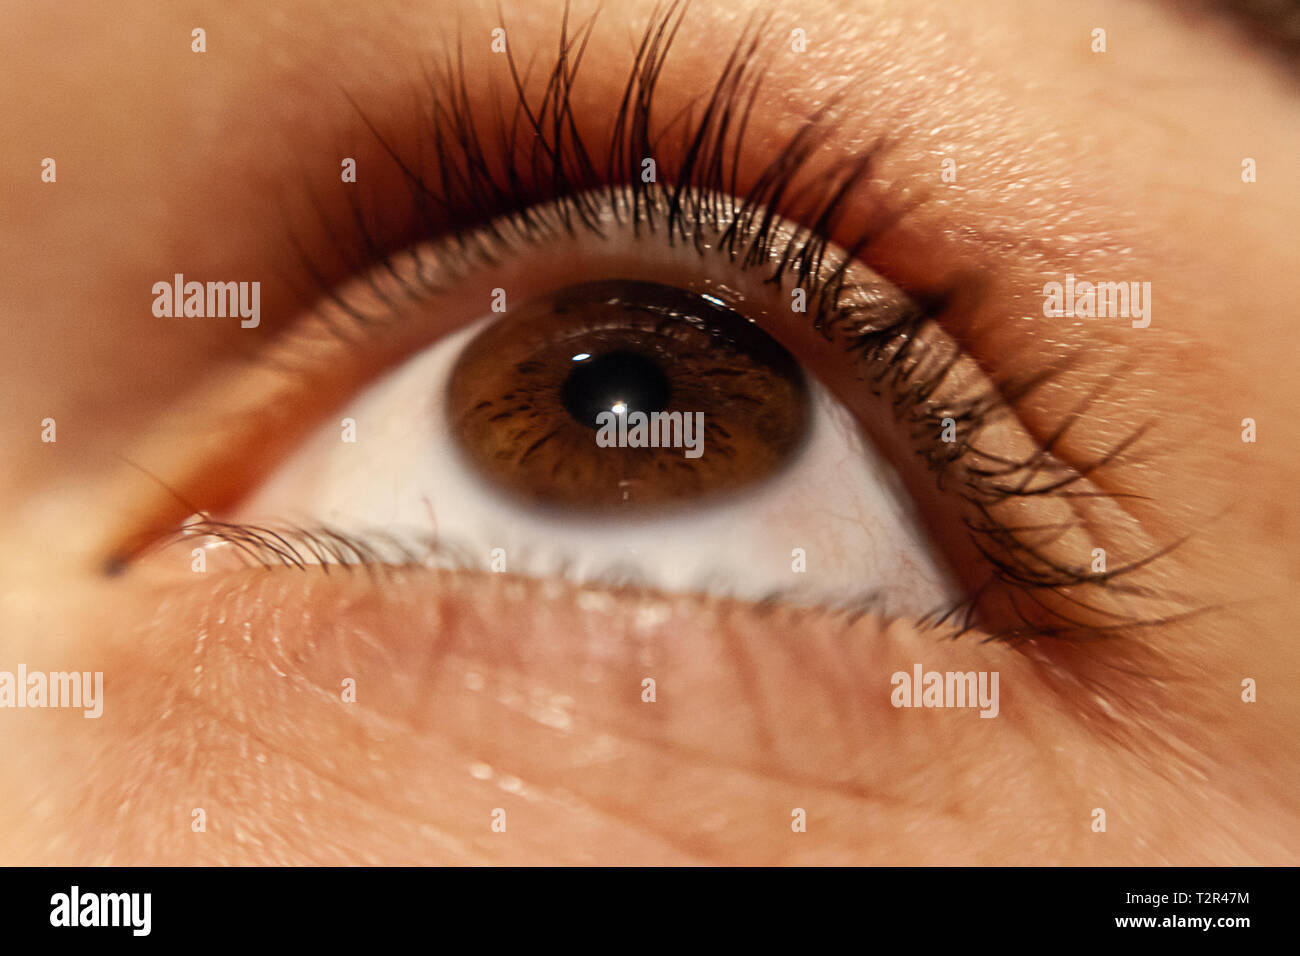 Braune Augen isolierten menschlichen Augen - eine schöne braune Augen - Bild Stockfoto